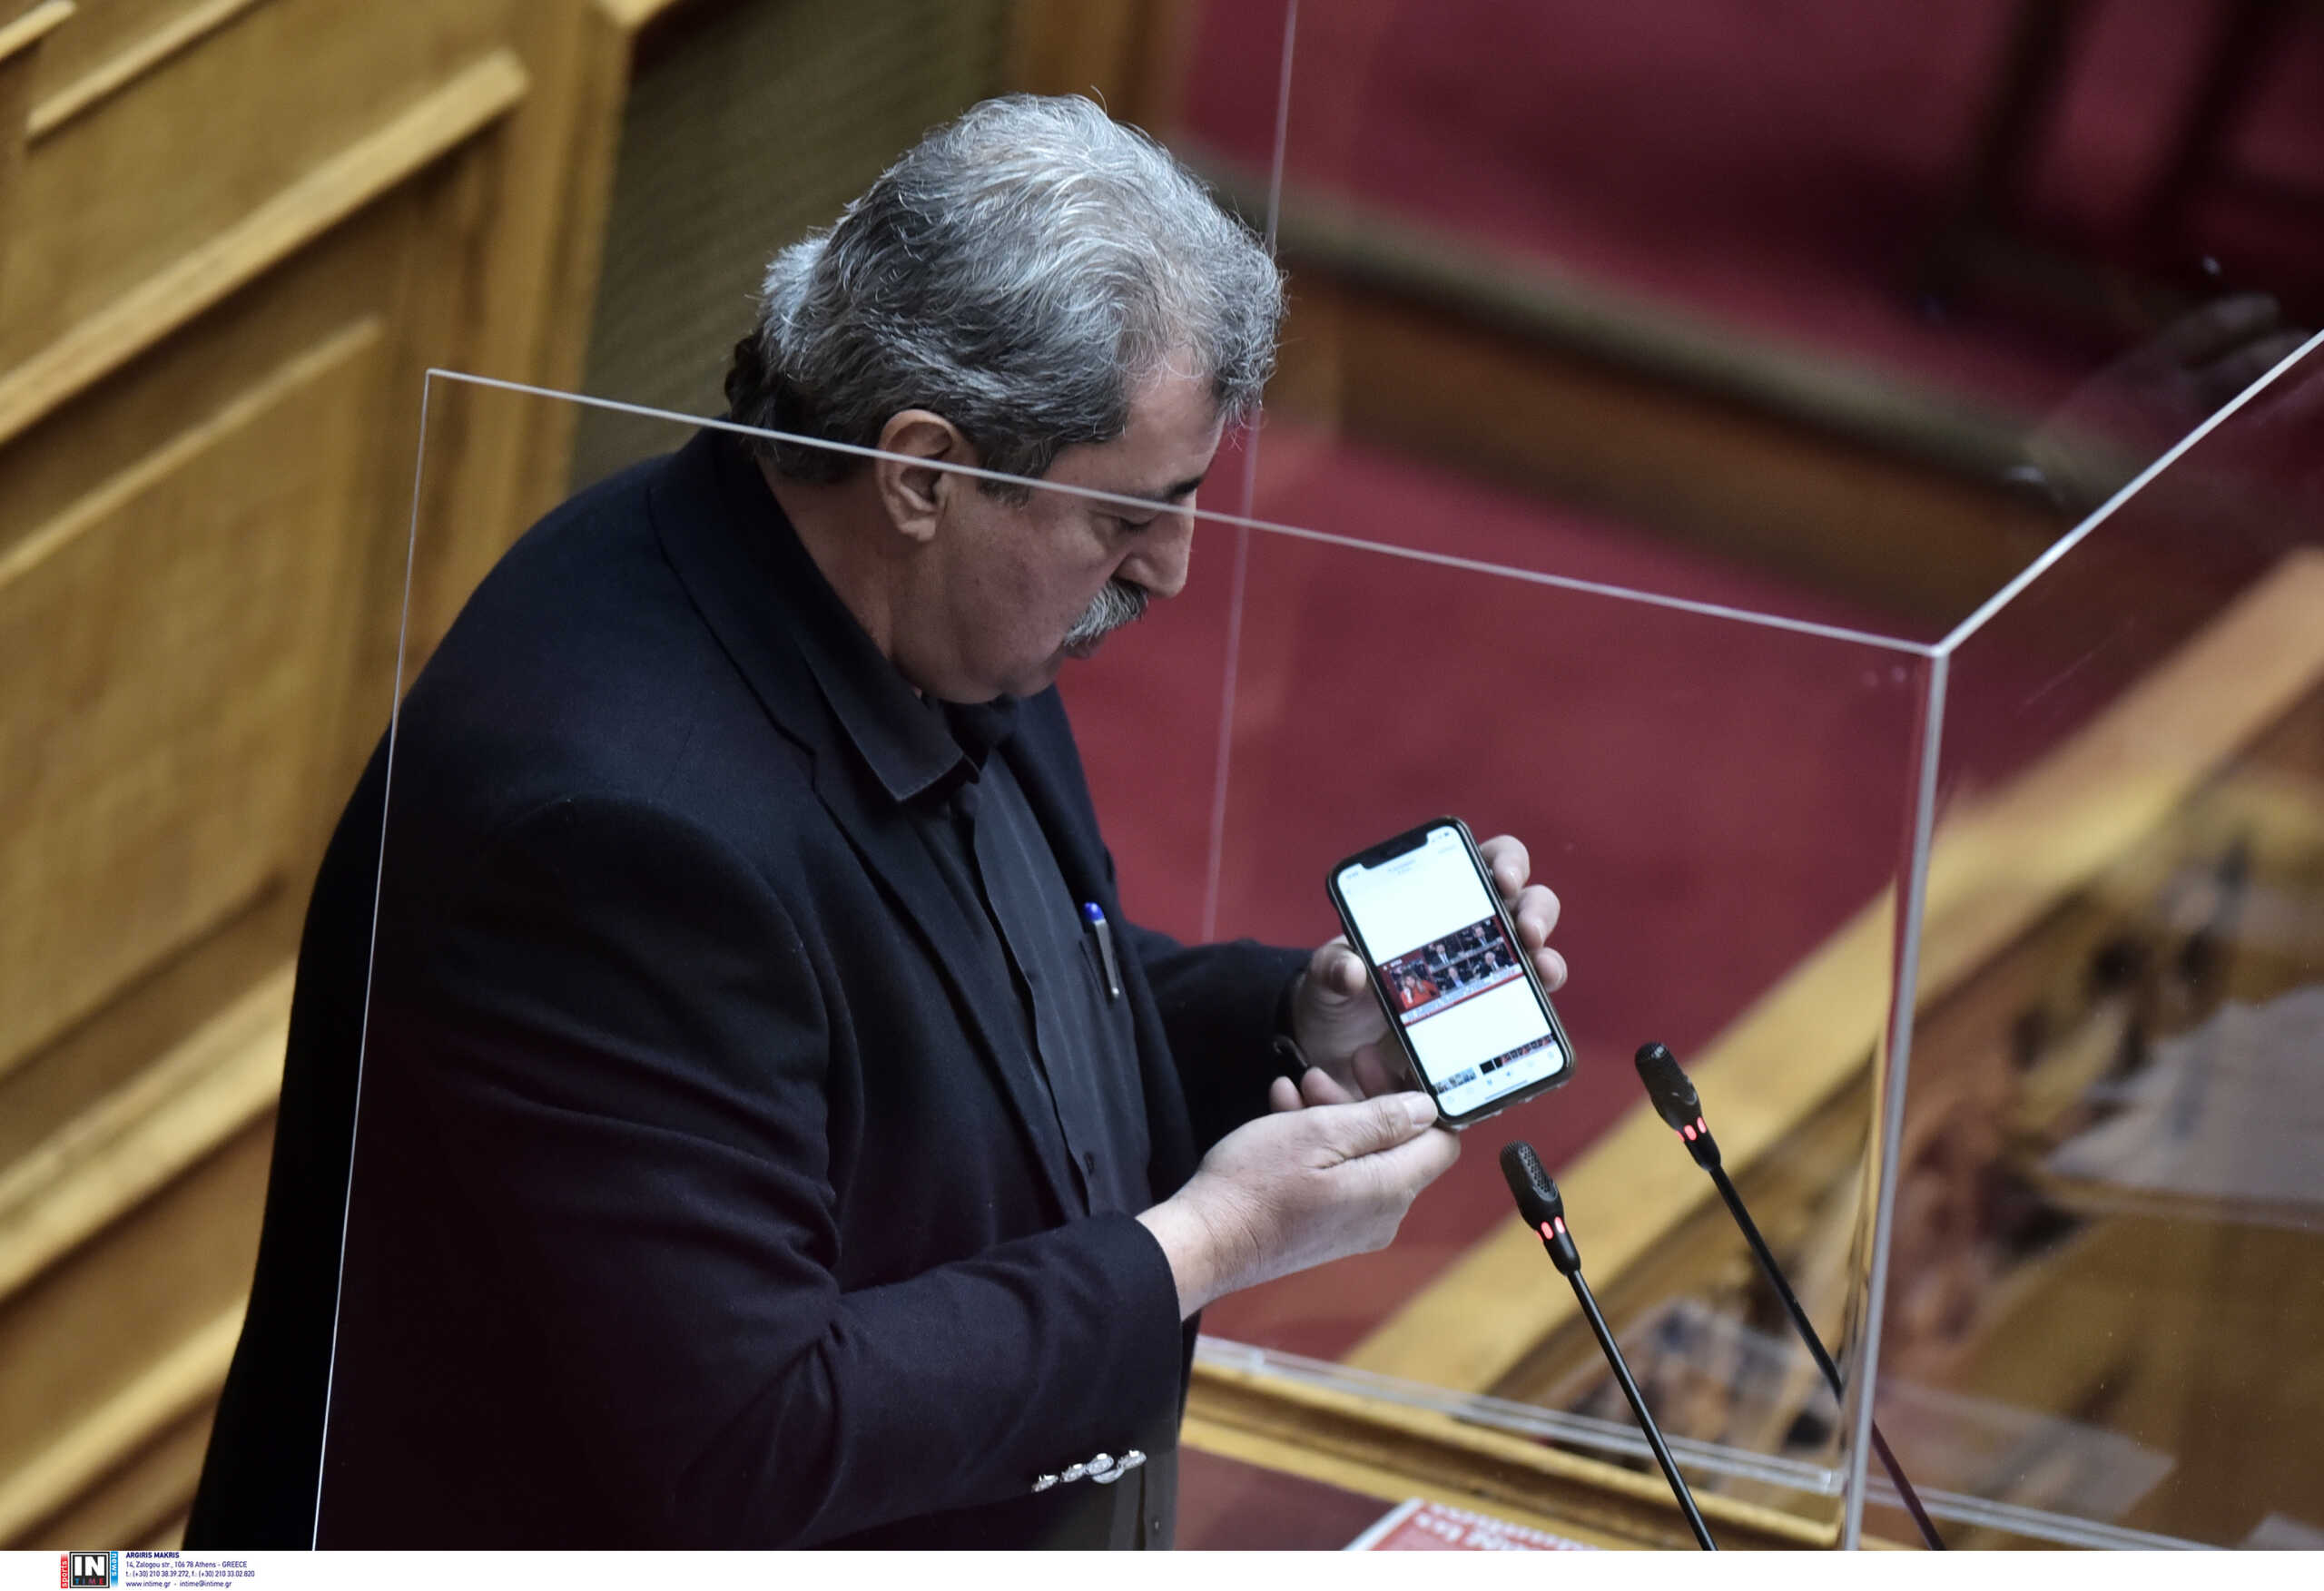 ΣΥΡΙΖΑ: Στηρίζει τον Παύλο Πολάκη ο Νίκος Μπελαβίλας – Είπε φανερά ό,τι πολλοί λέμε κρυφά